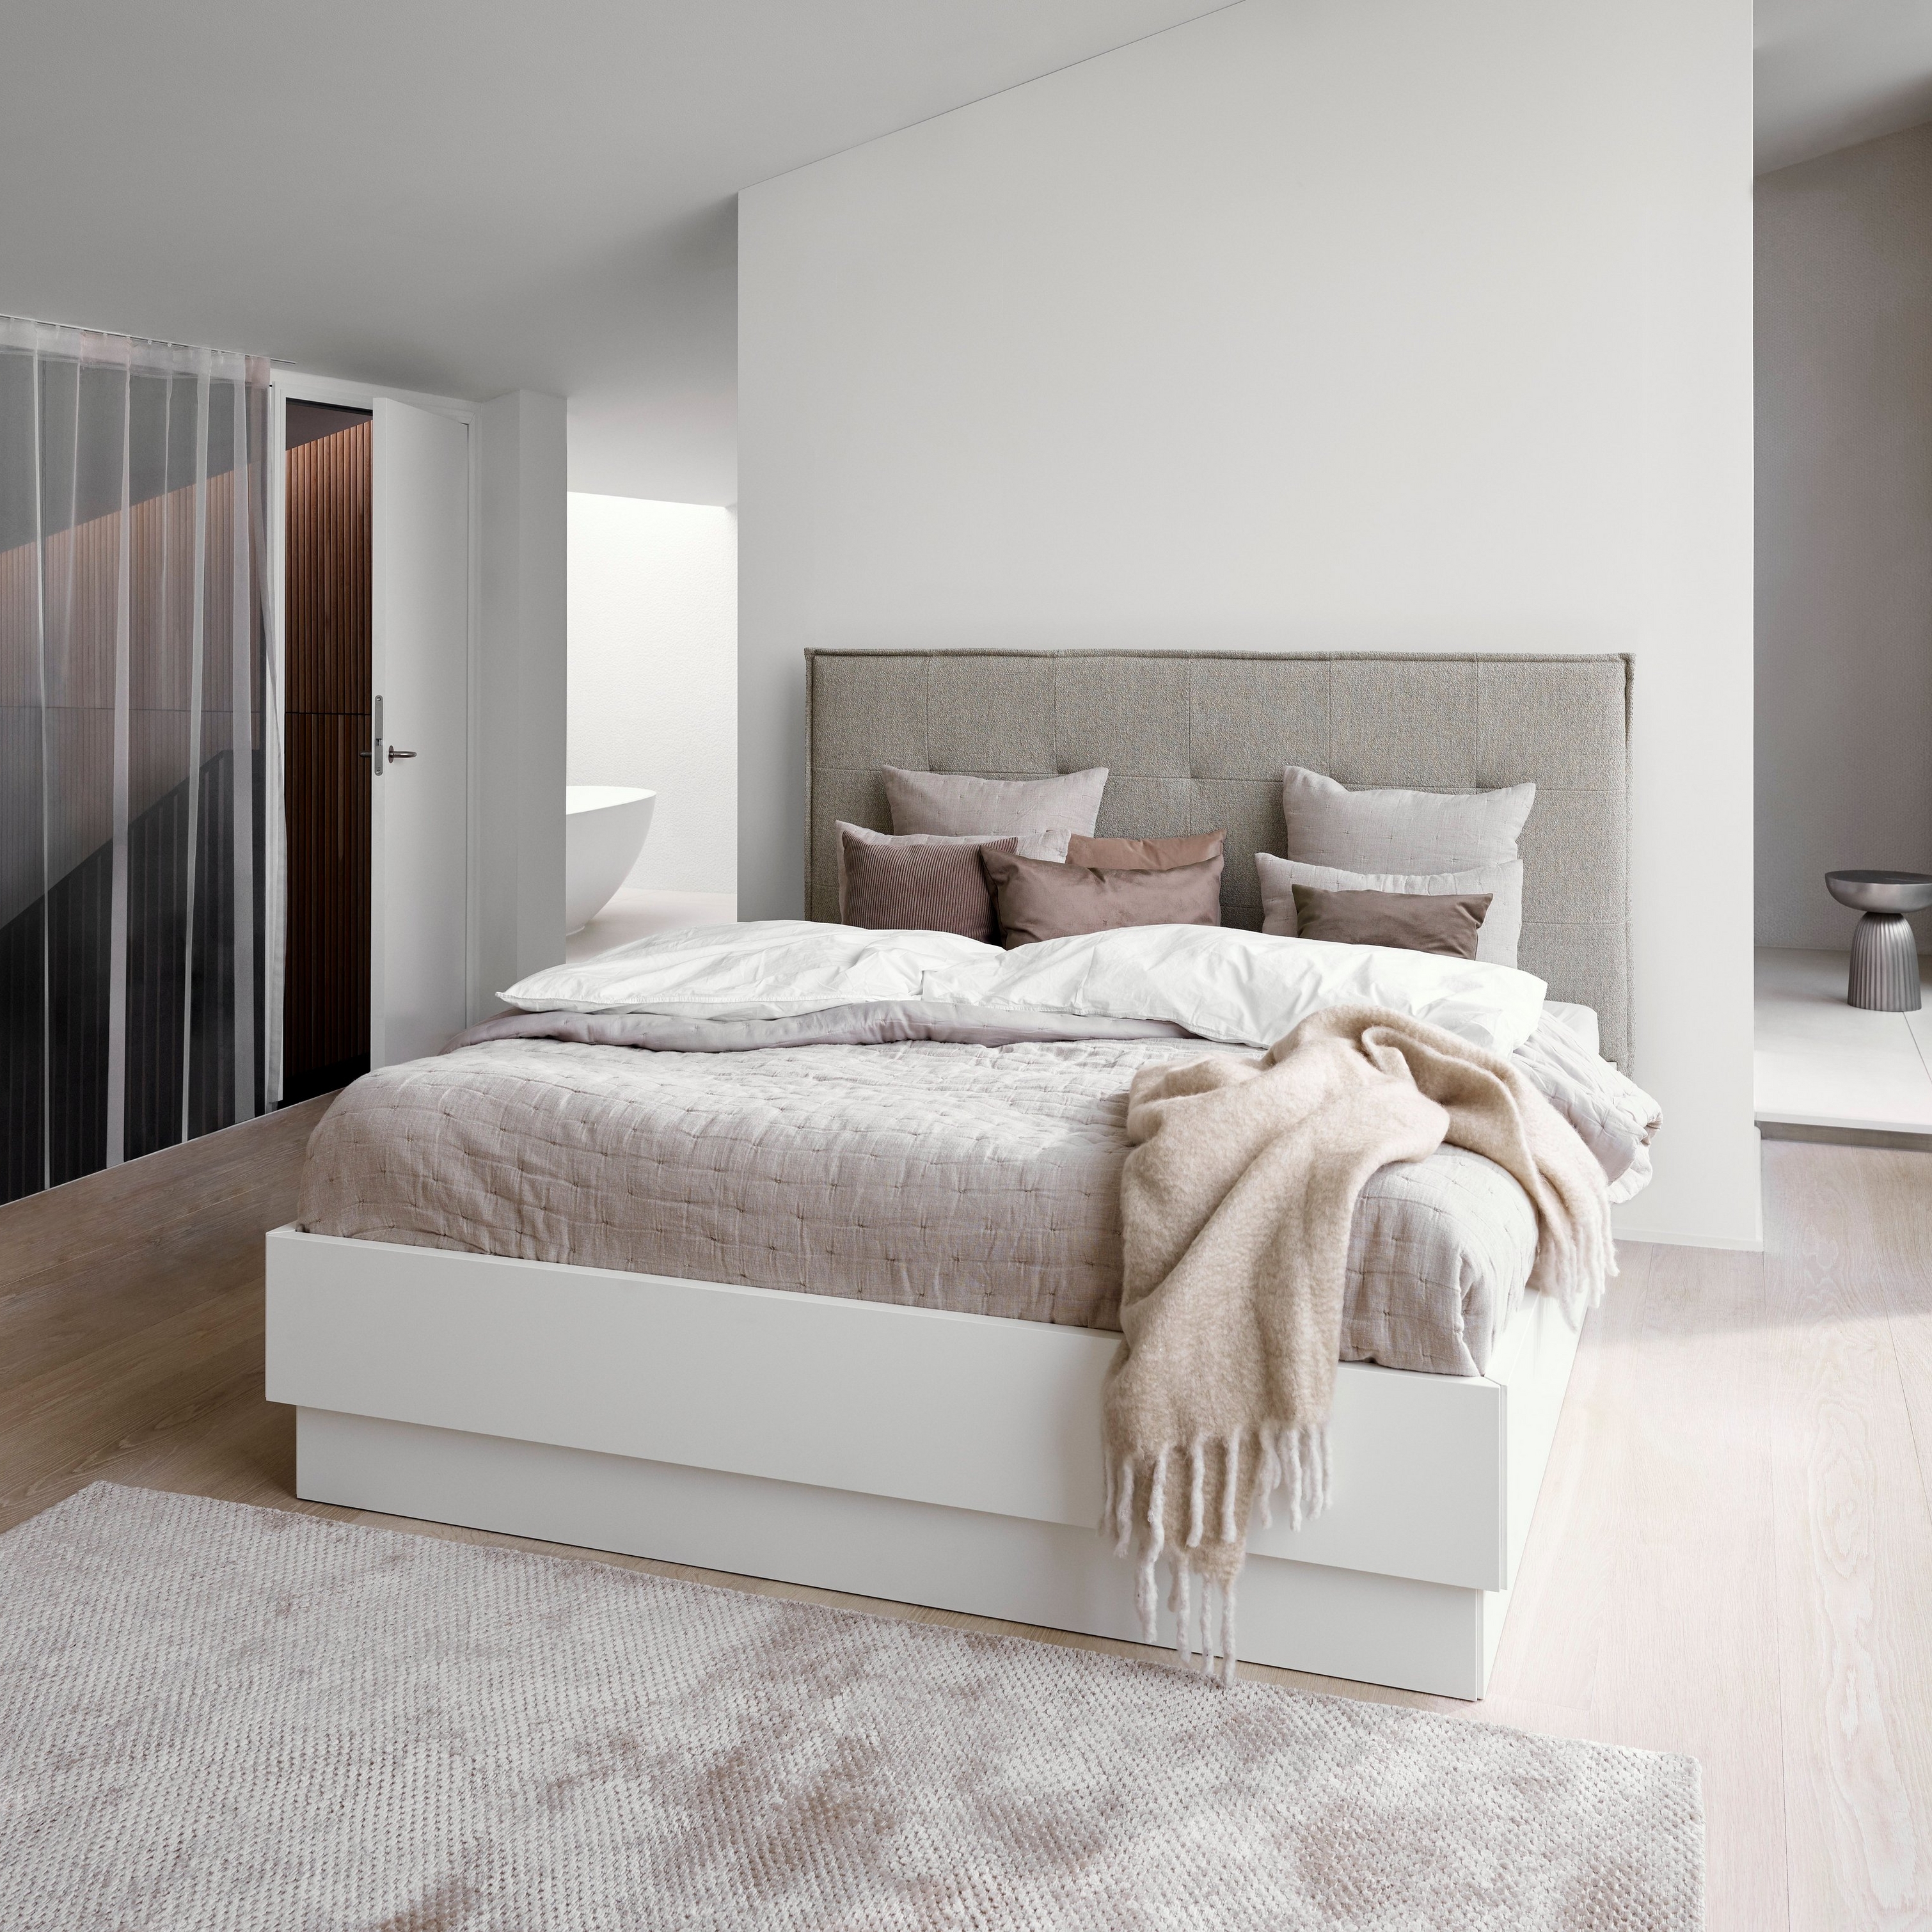 Минималистичная спальня с кроватью с мягкой обивкой серого цвета, белым постельным бельем и текстурированным бежевым покрывалом.